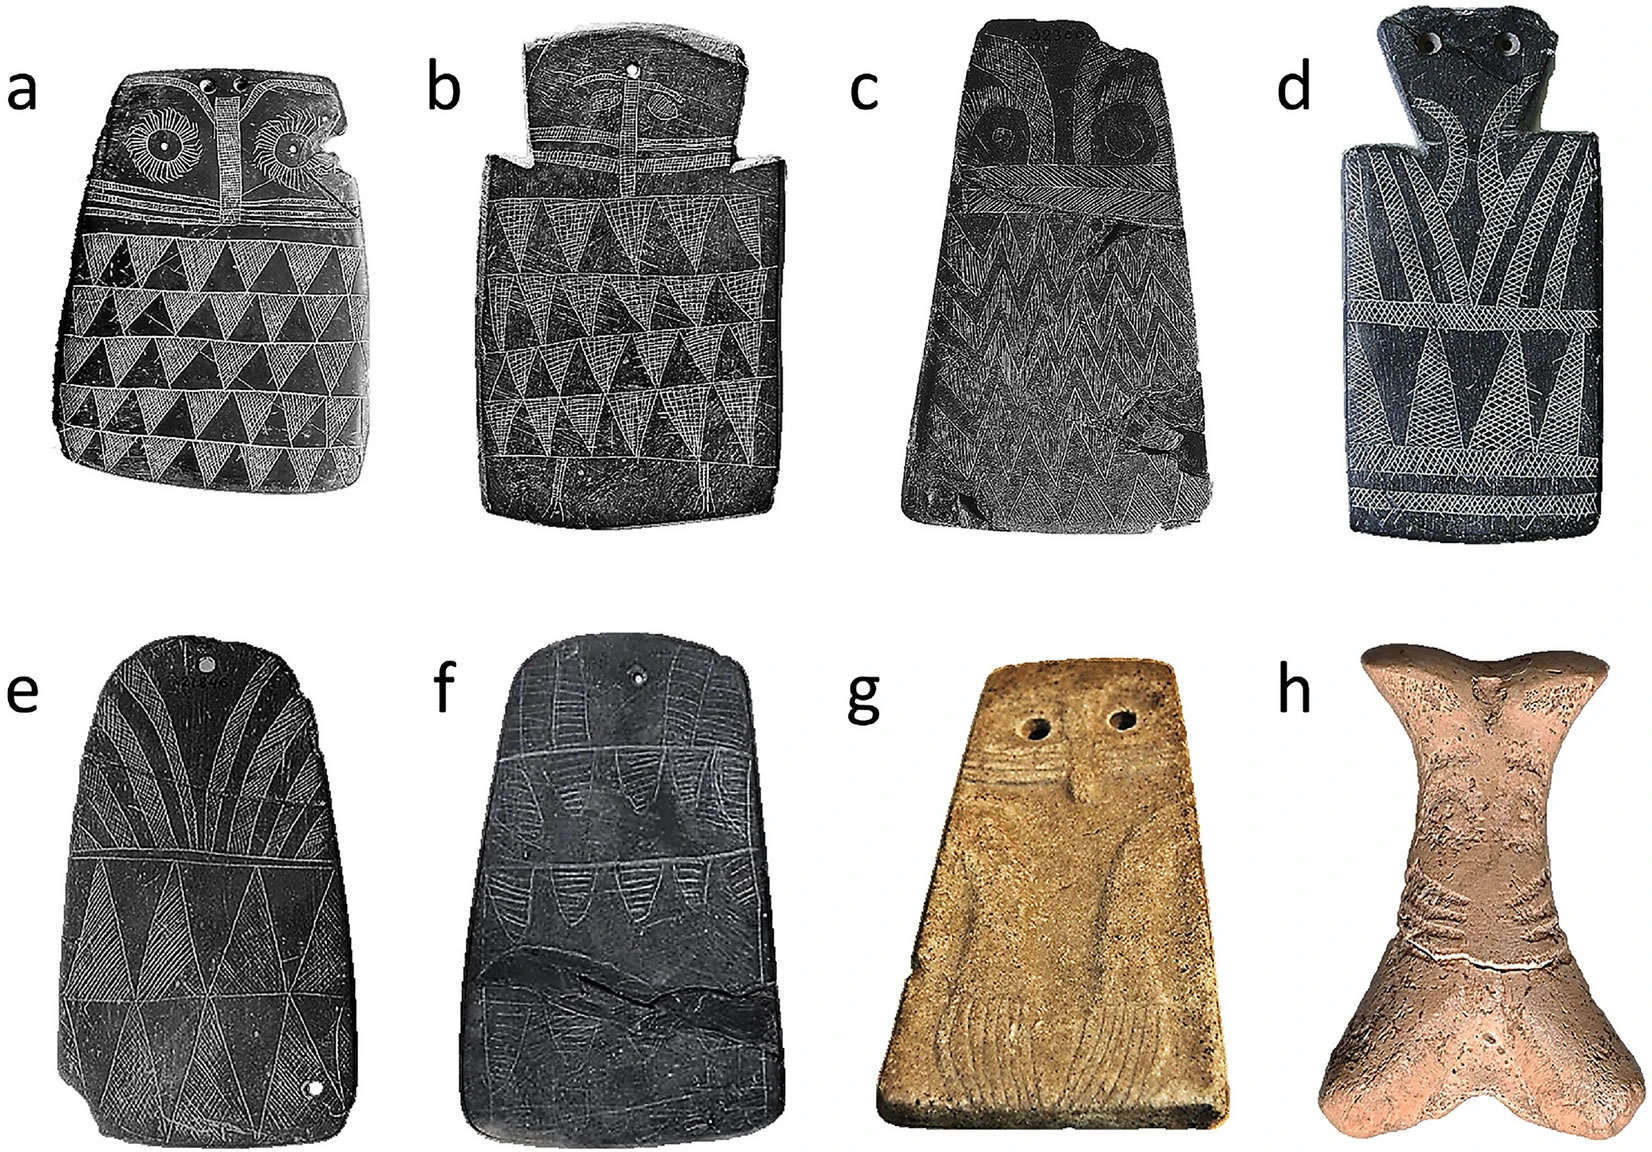 5000年前伊比利亚半岛的少年们可能就会制作猫头鹰形状的石雕牌饰用作玩具